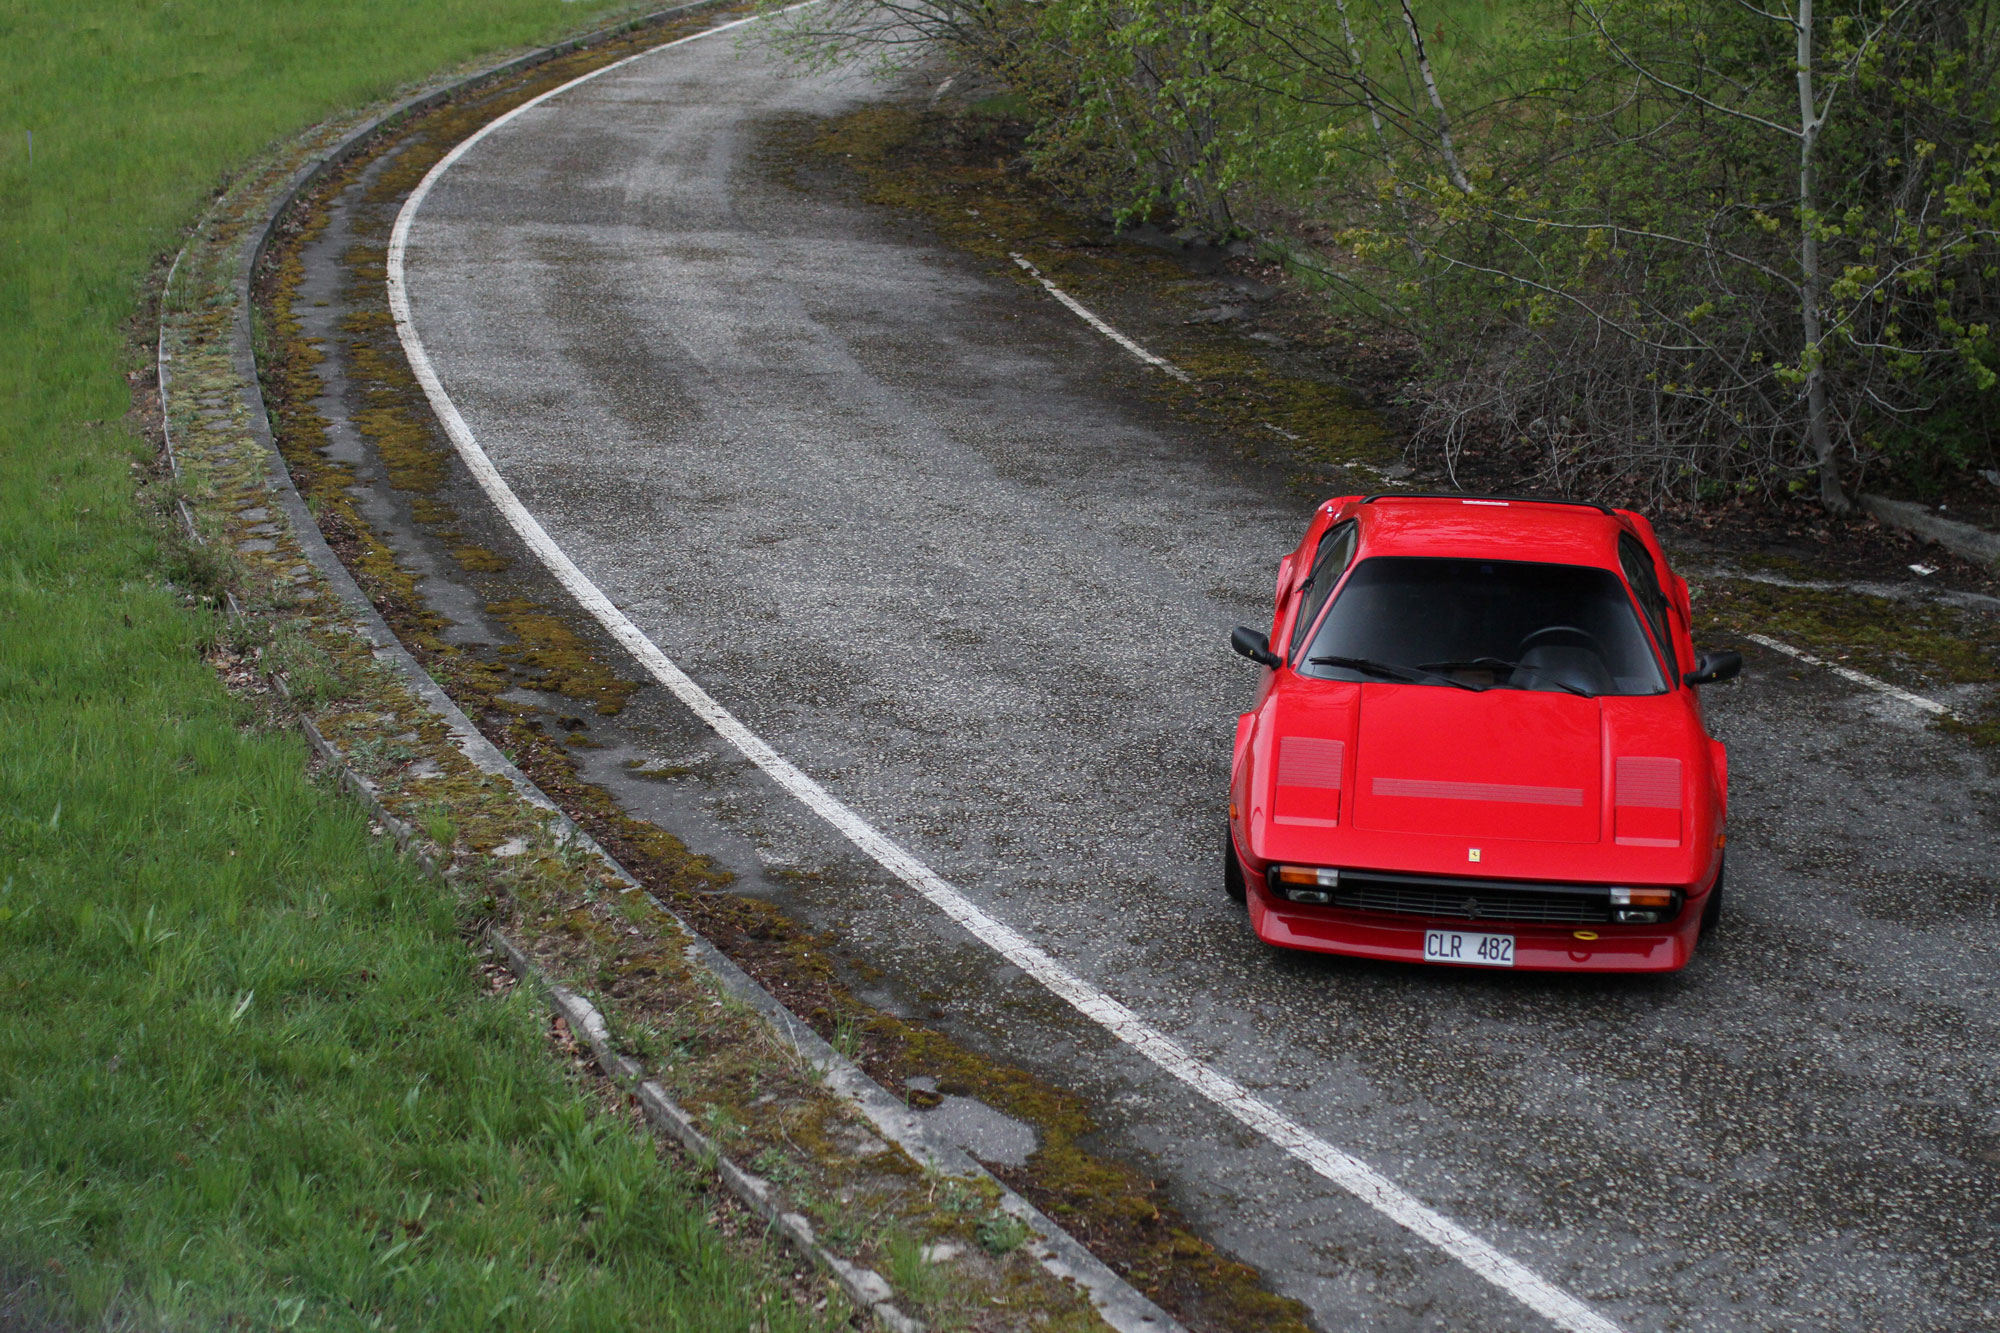 övergivna avfarten från en höjd med Ferrari som en färgklick mitt i det gråa